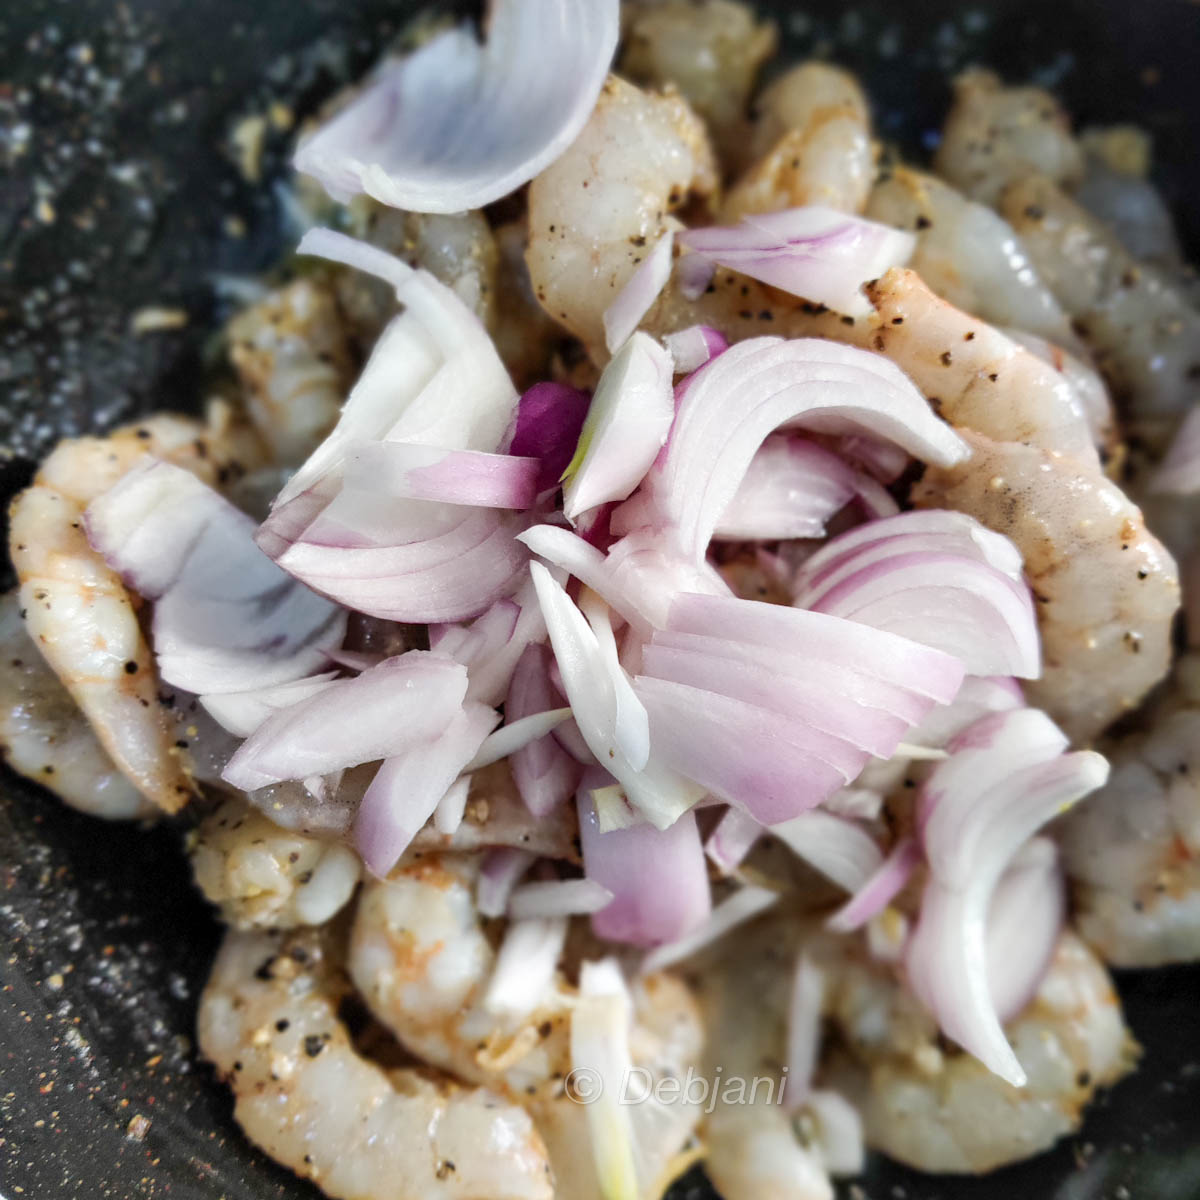 Shrimp and Spinach cream sauce recipe debjanir rannaghar fry shrimp and onion (7)